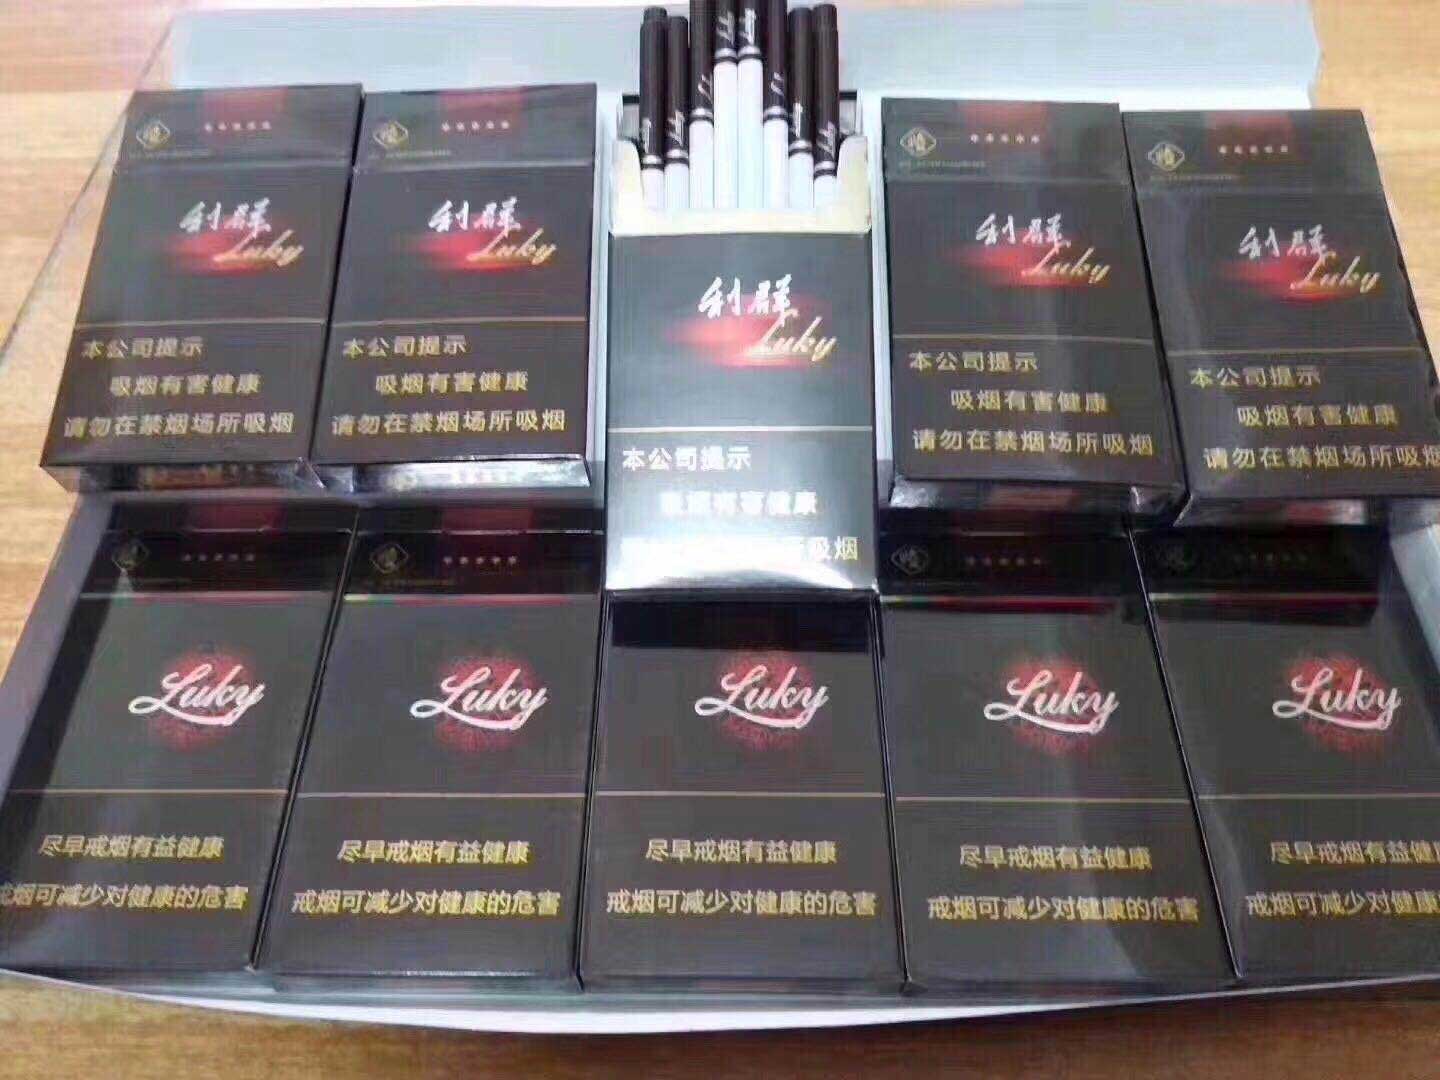 细支阳光利群香烟越南代工